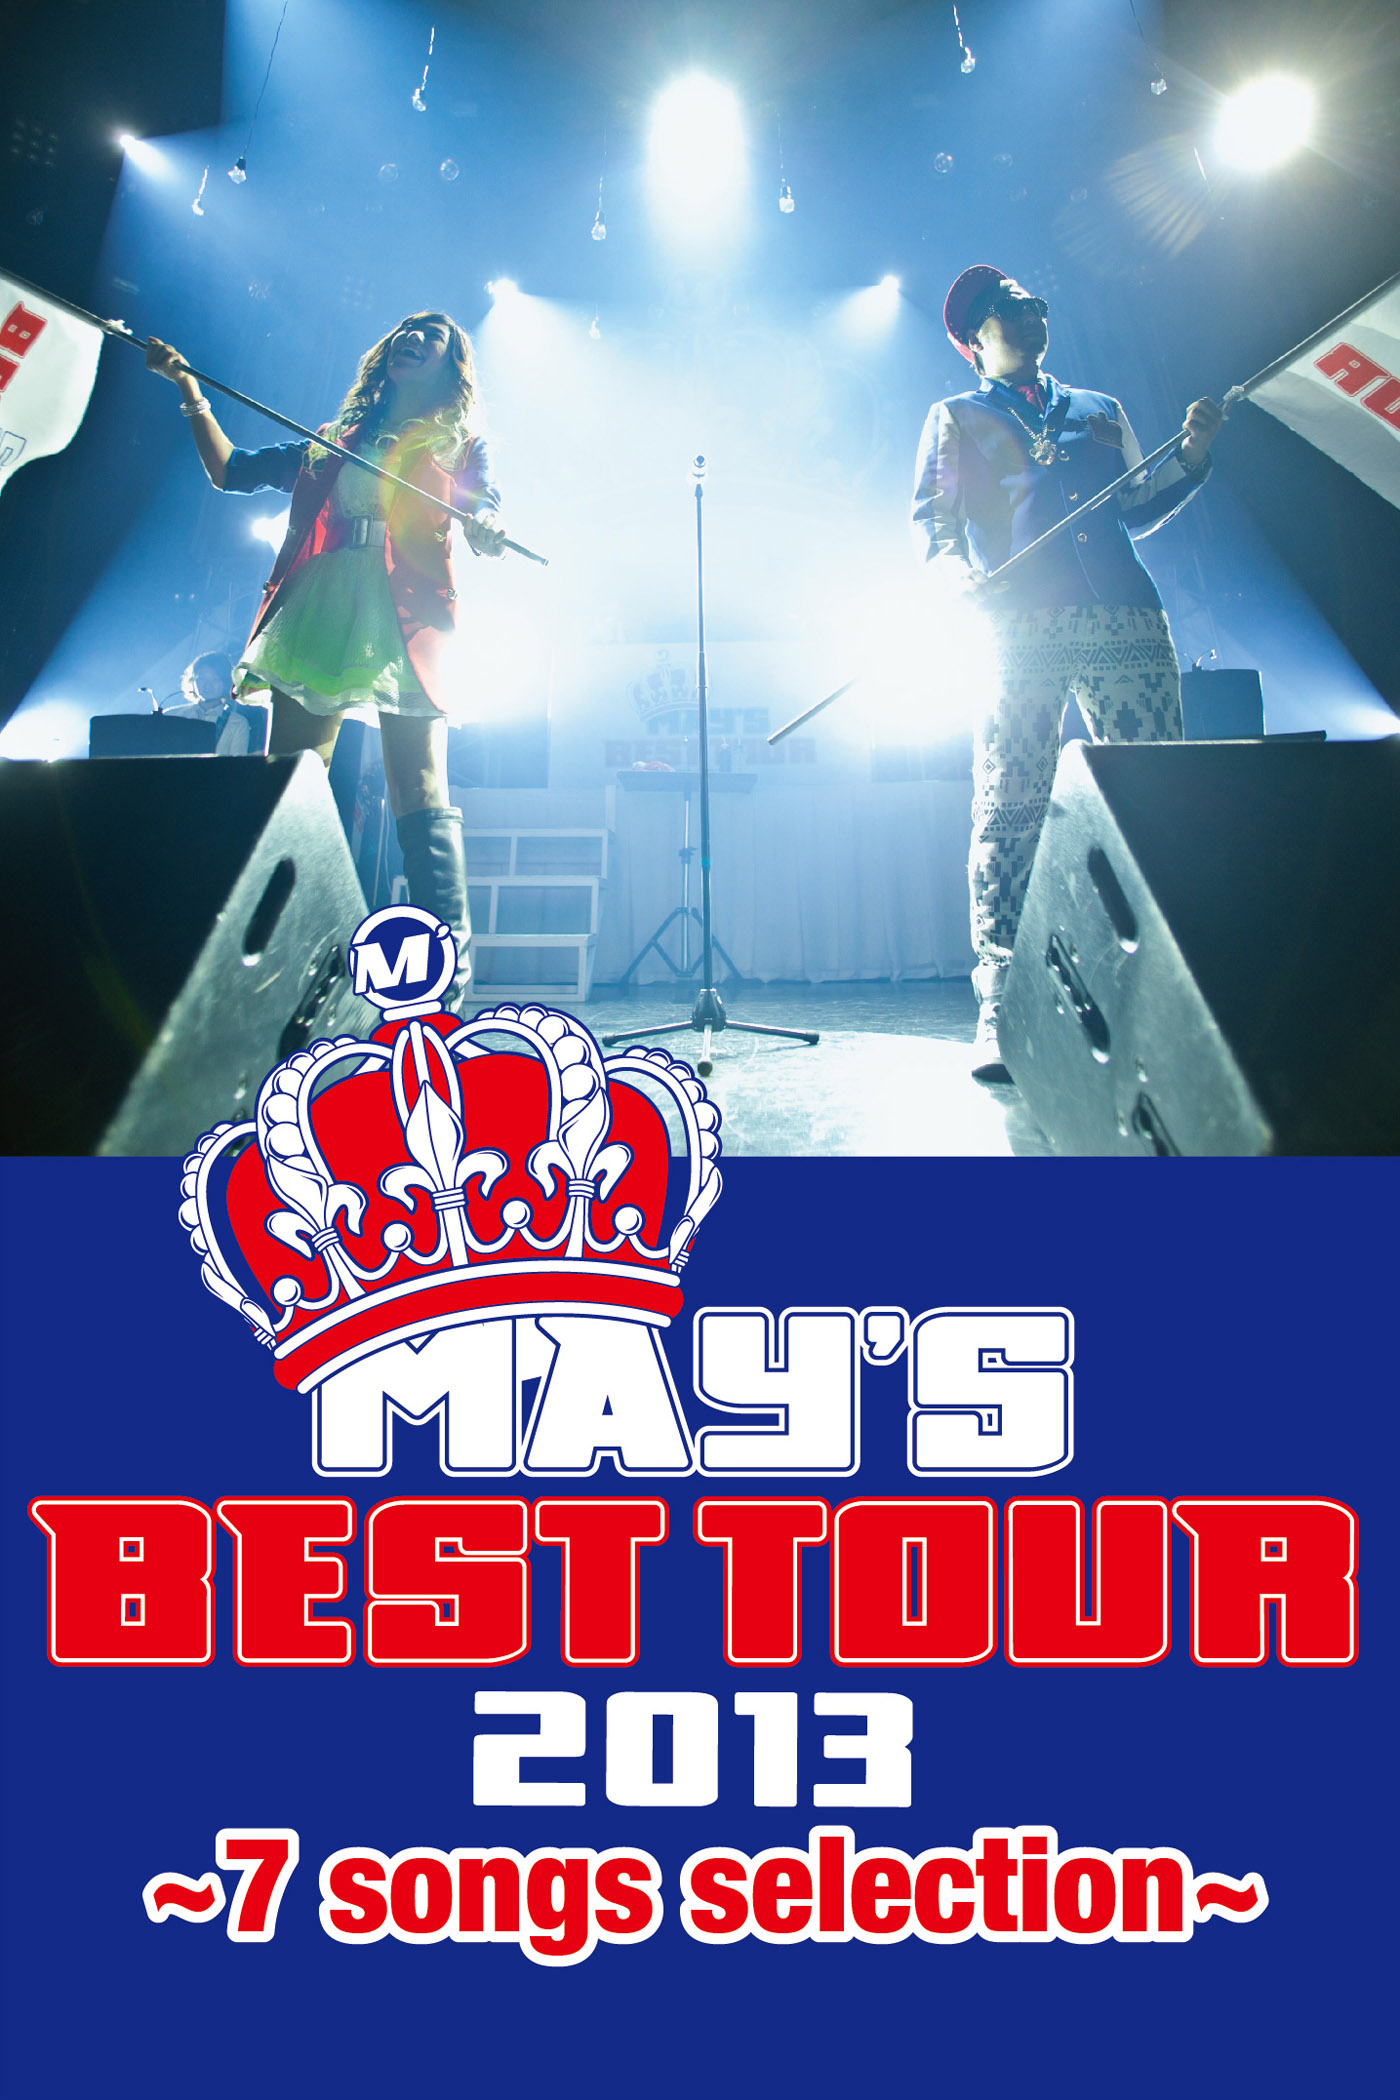 BEST TOUR 2013